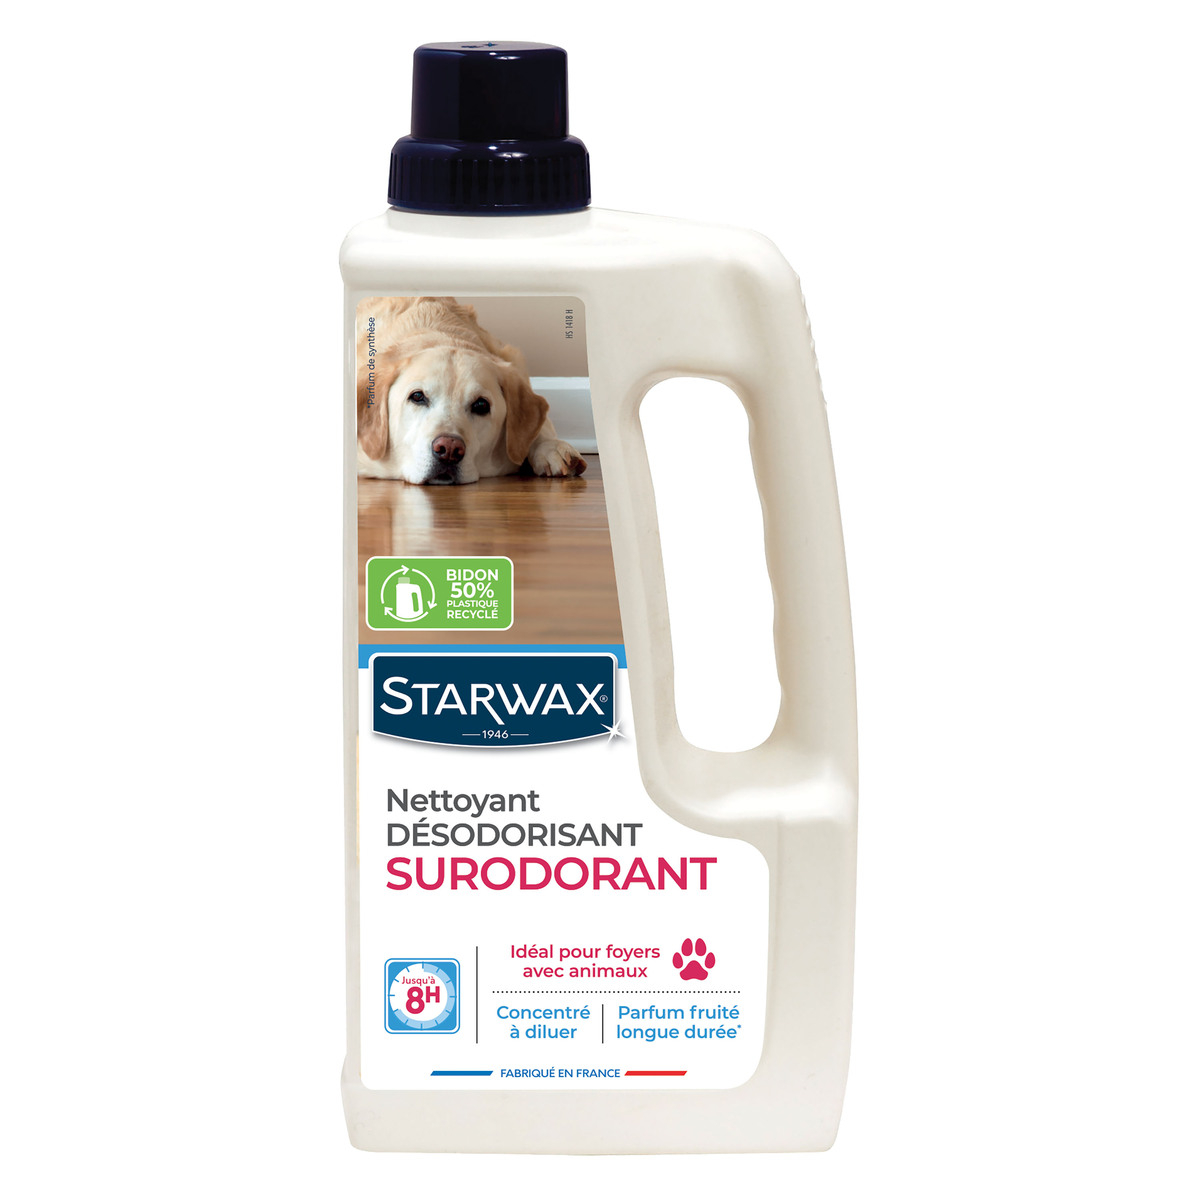 Nettoyant désinfectant surodorant spécial milieu animal